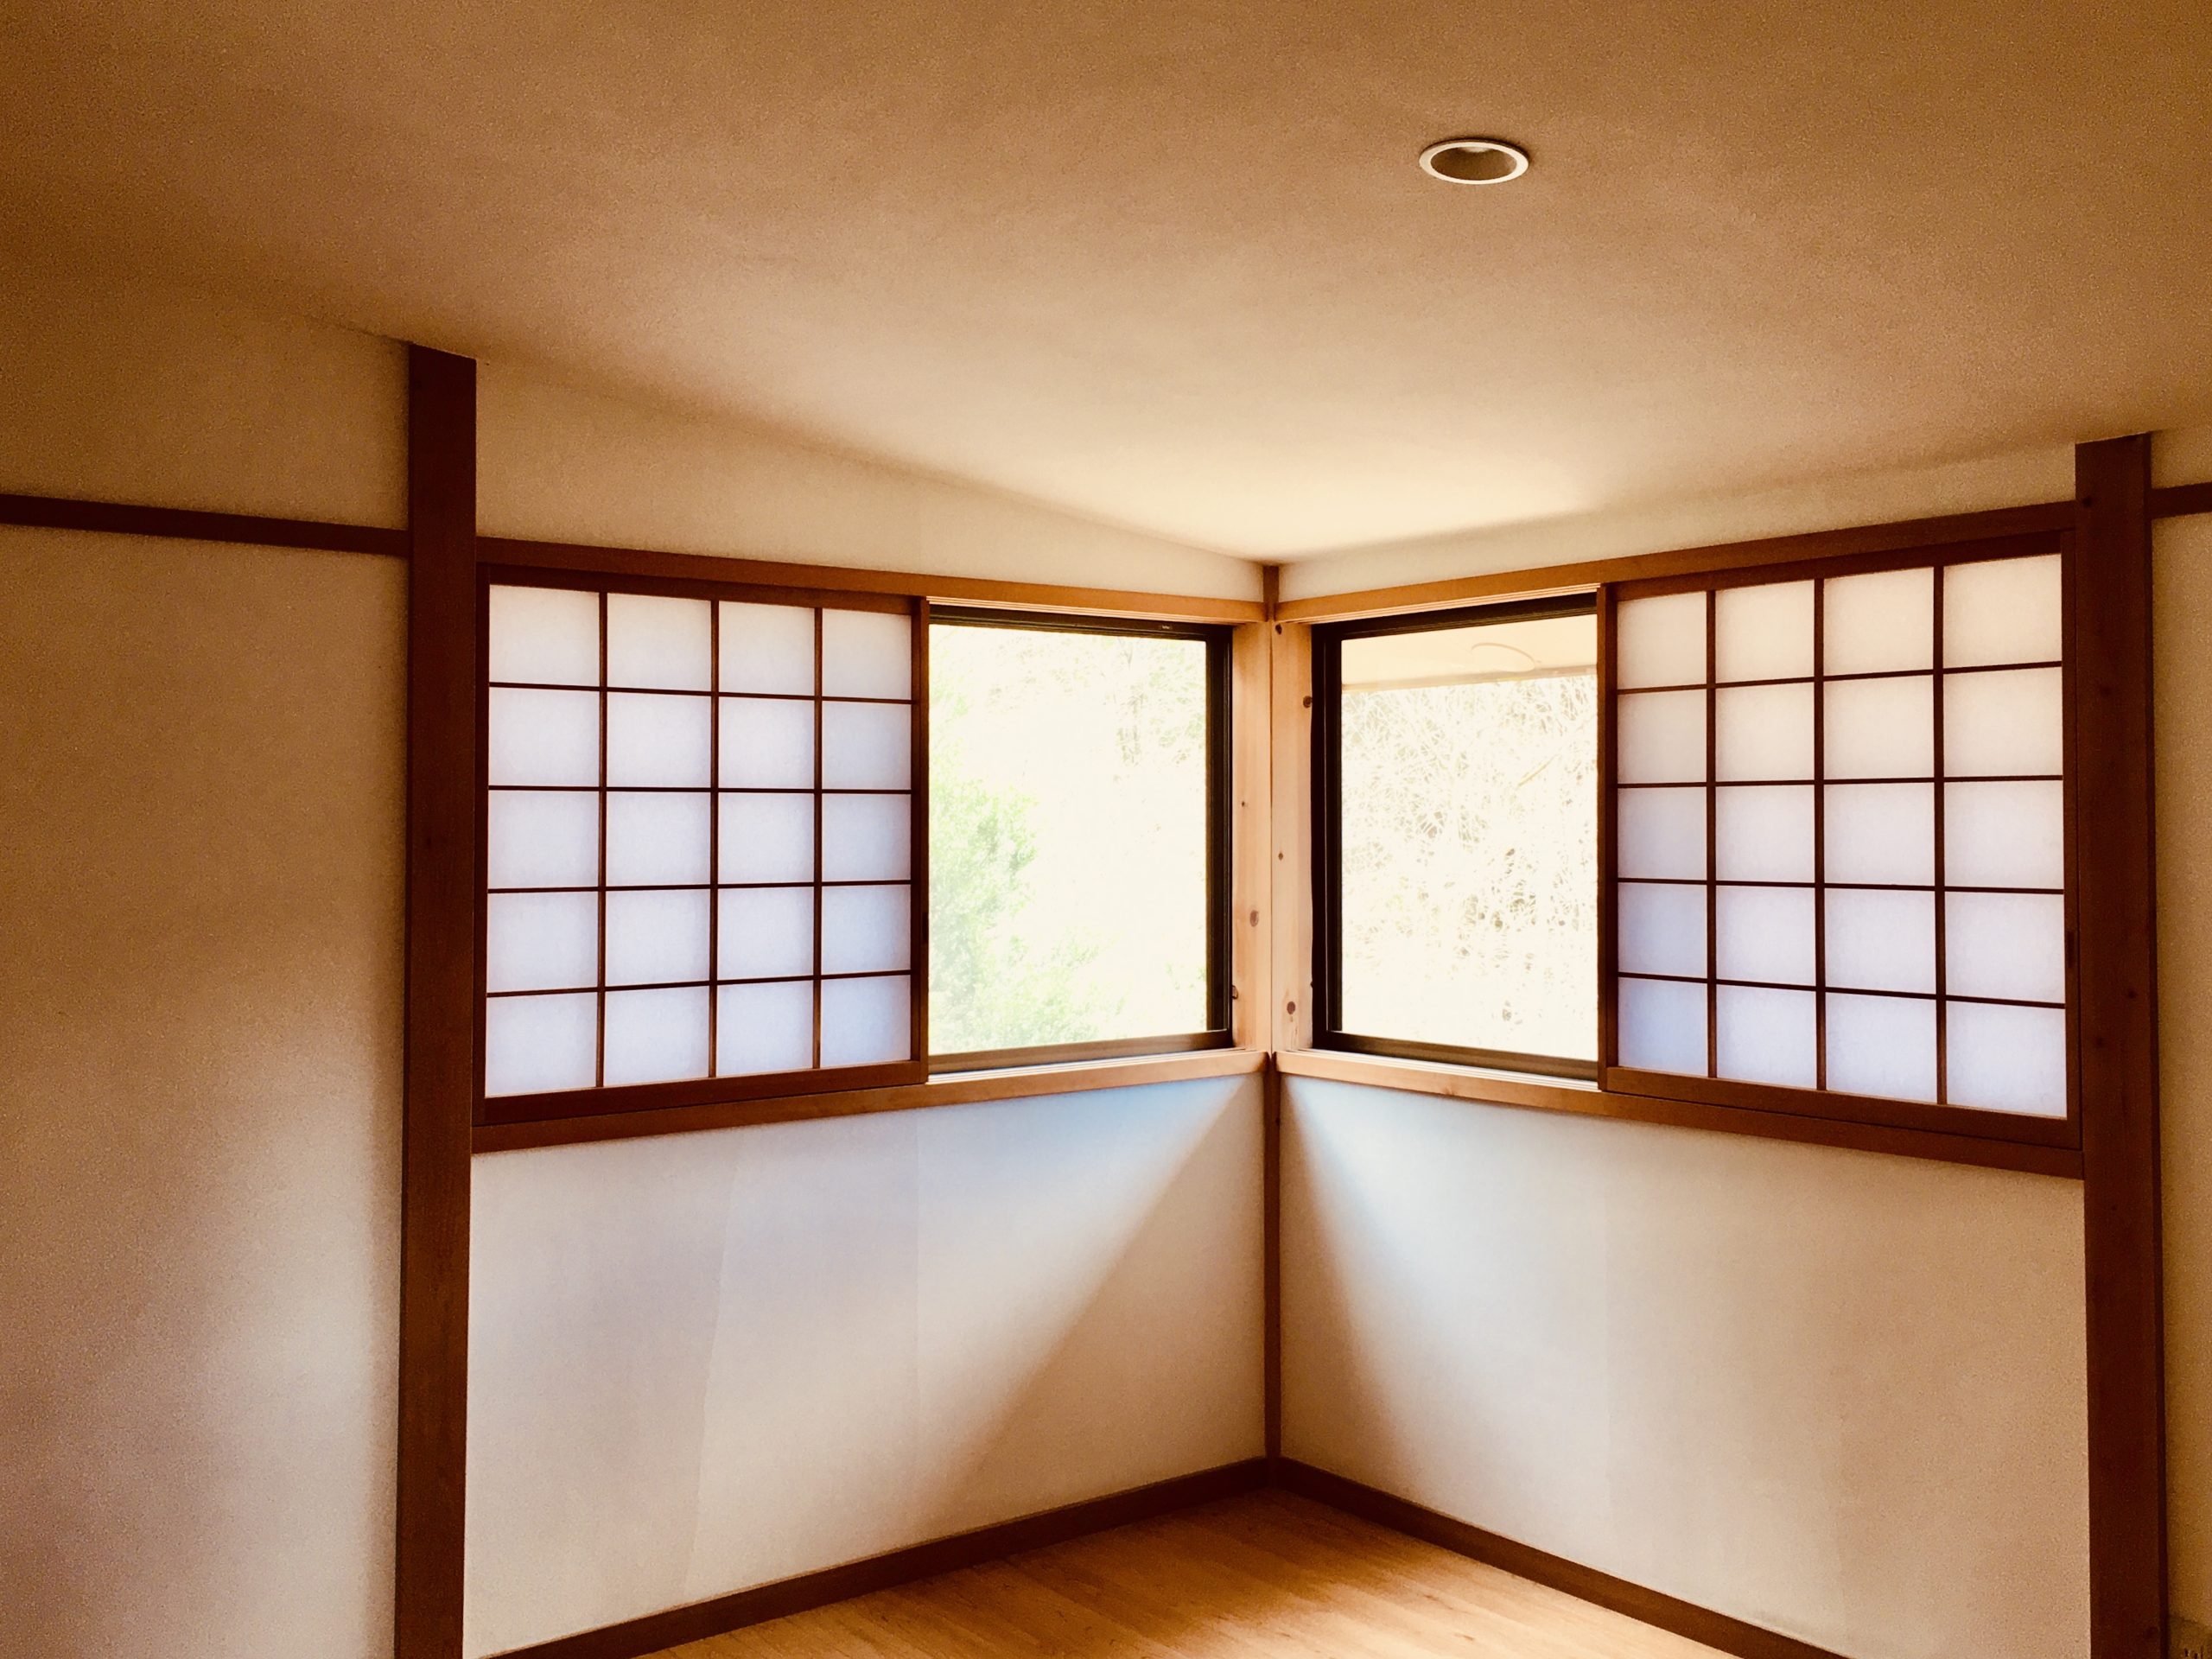 静岡県東部裾野市富士急十里木別荘地に建築した別荘を珪藻土や無垢の木など自然素材でリフォーム・リノベーションしました。
天井の勾配を変えた寝室